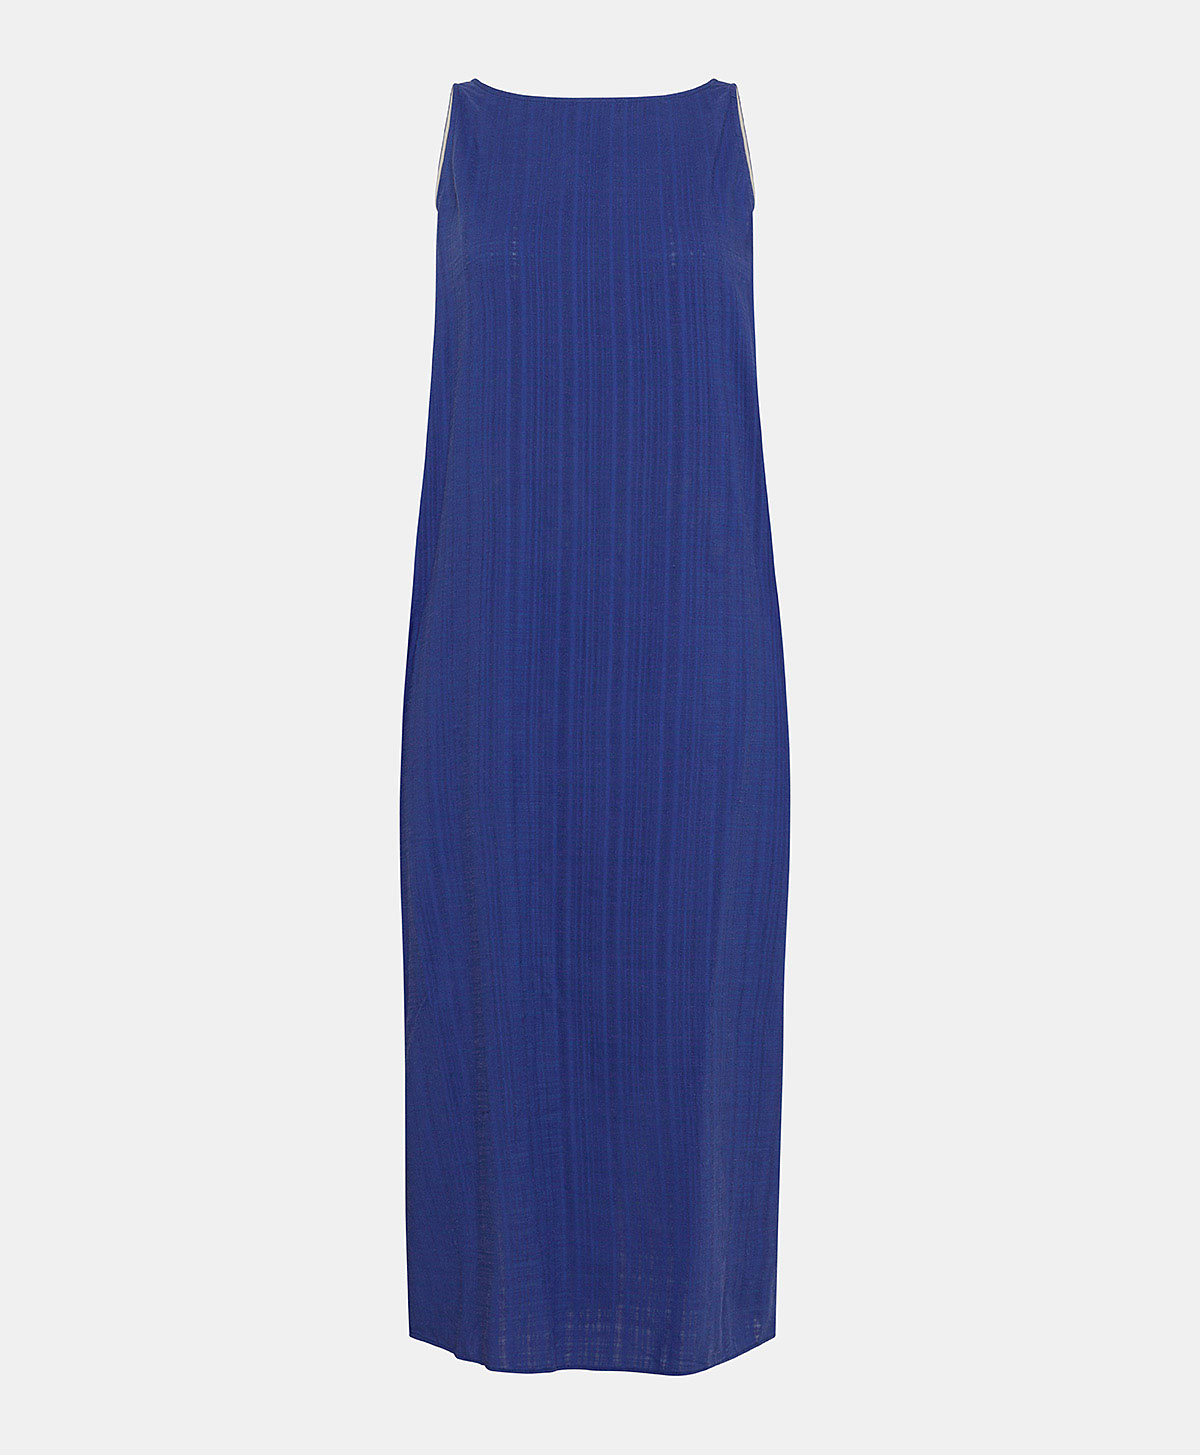 CATARIA DRESS IN GAUZE - BLUE - Momonì